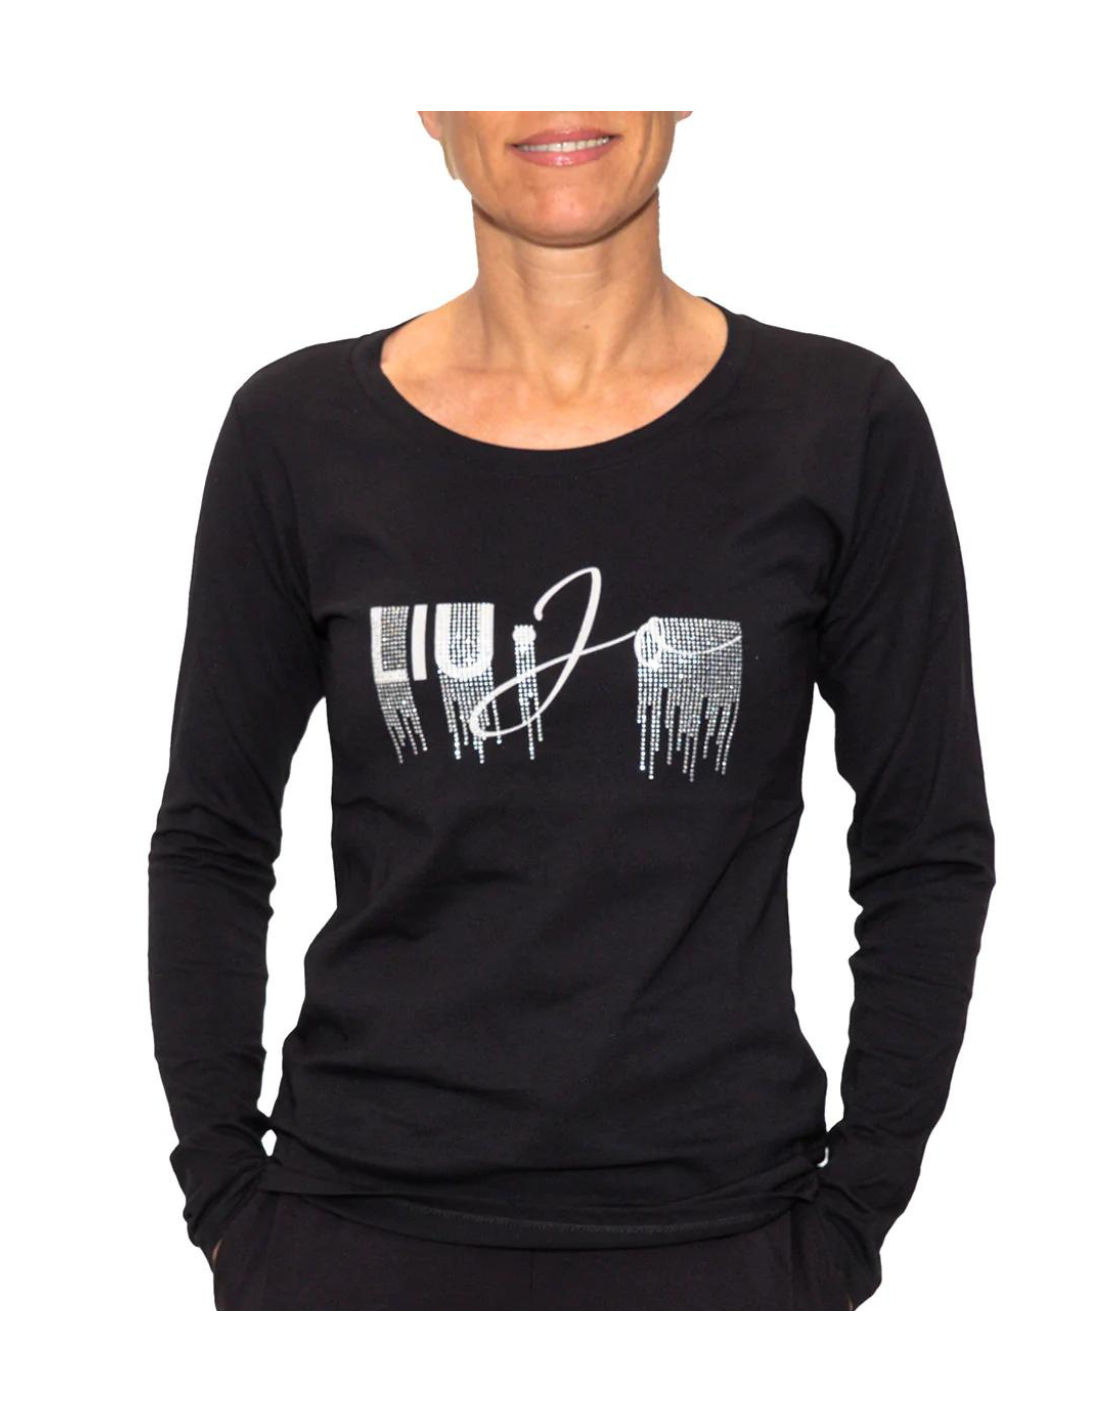 T-Shirt Maglietta Maniche Corte Nera Donna (cod.9051 28) - JOPHY & CO.